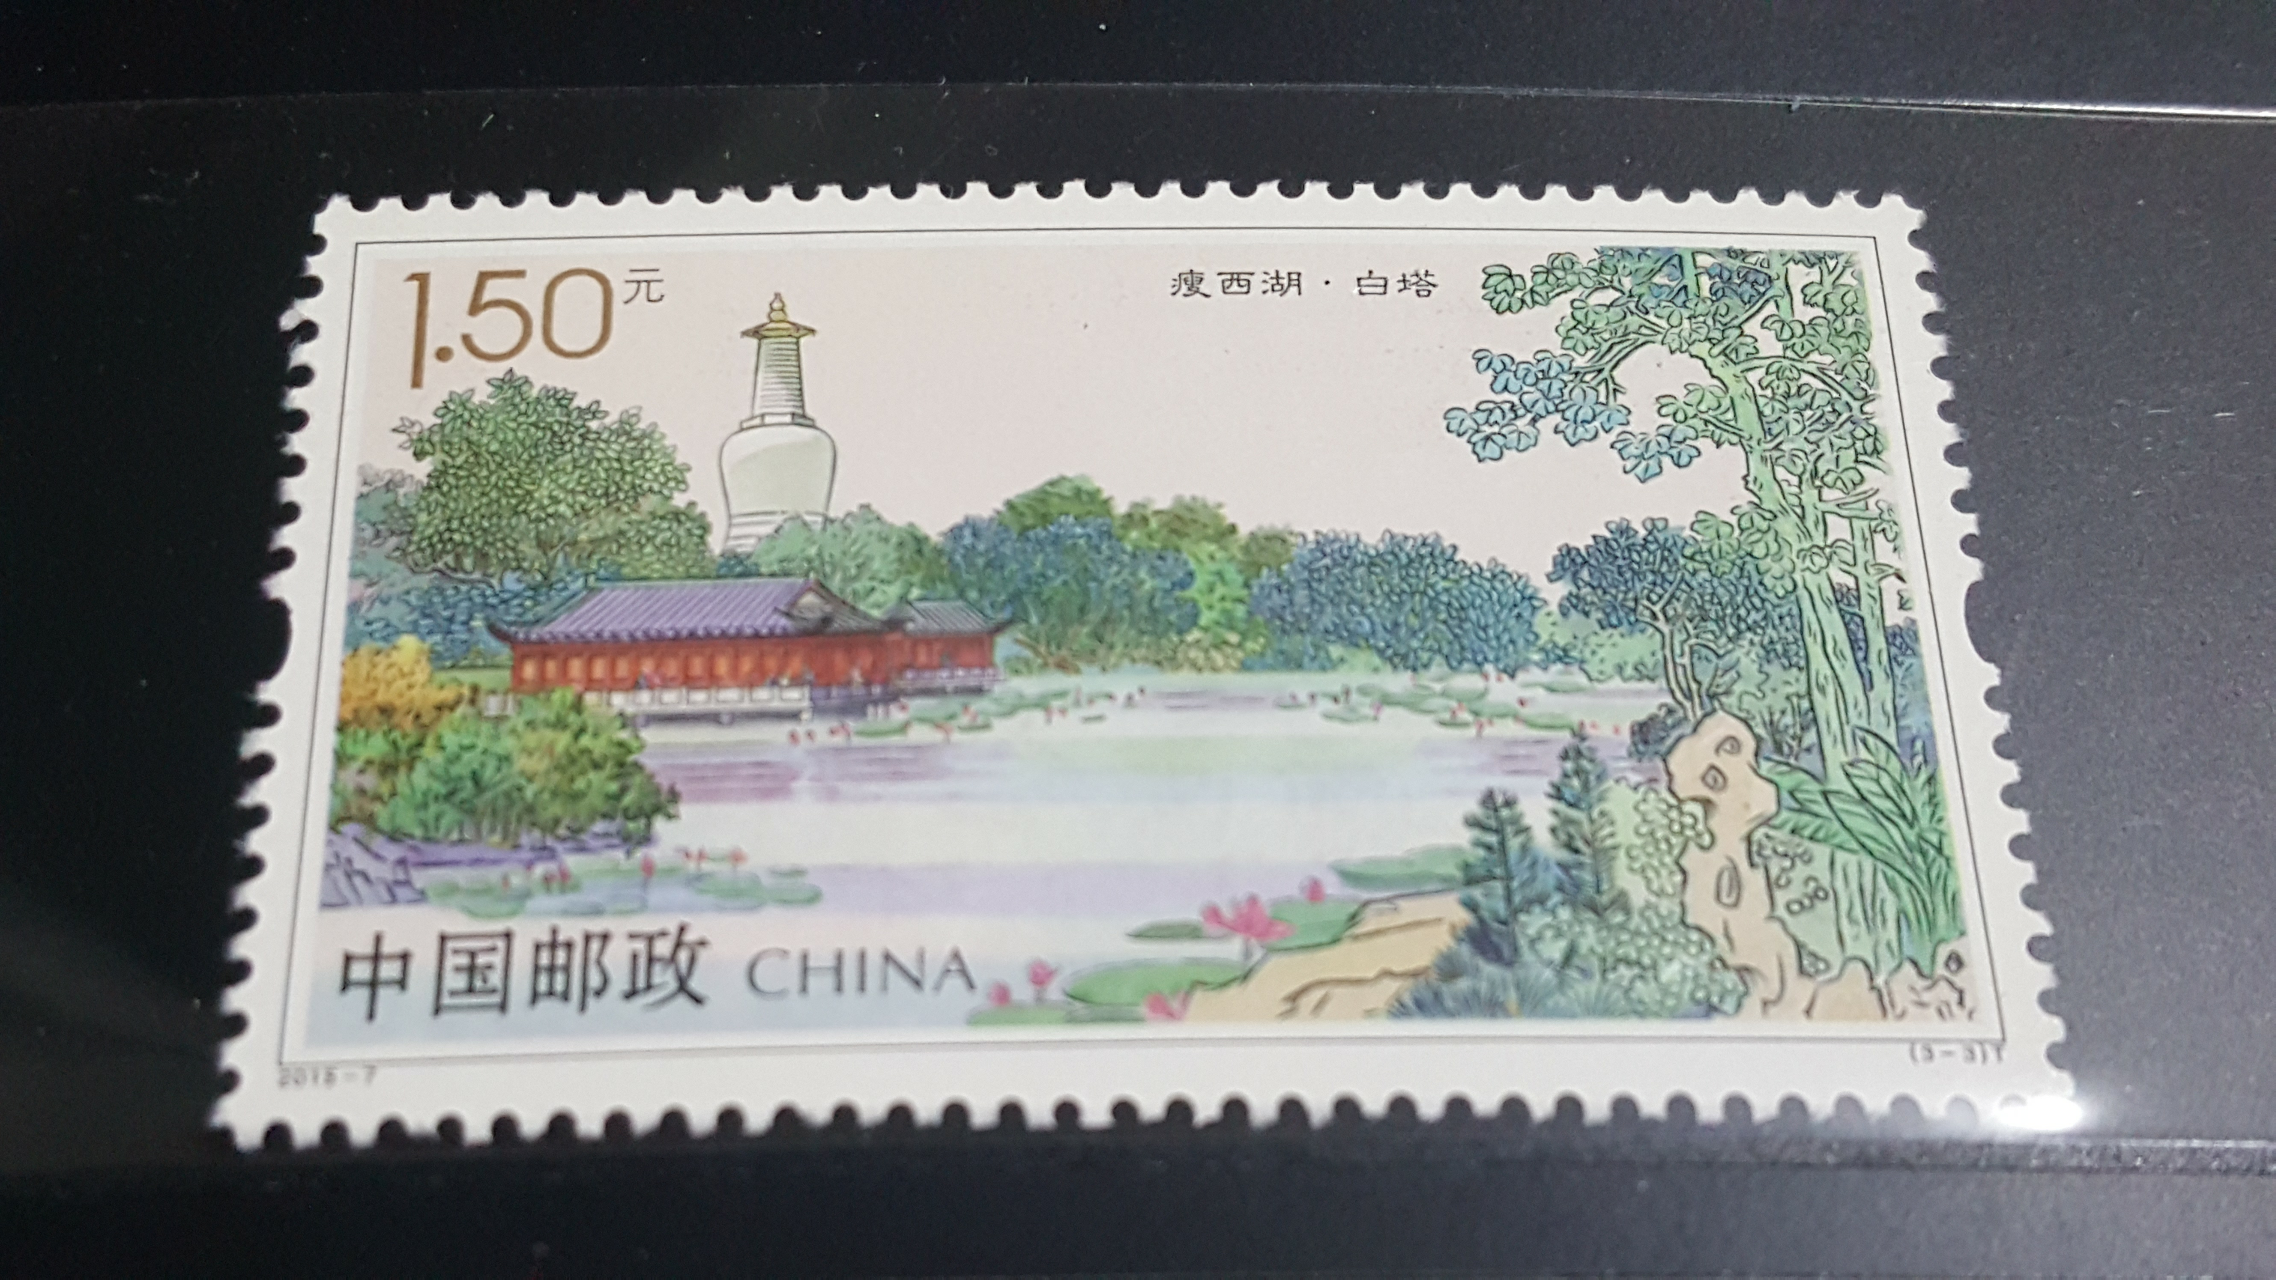 日本信销邮票～日本的传统文化1～4集，40全-价格:35元-se85523903-亚洲邮票-零售-7788收藏__收藏热线